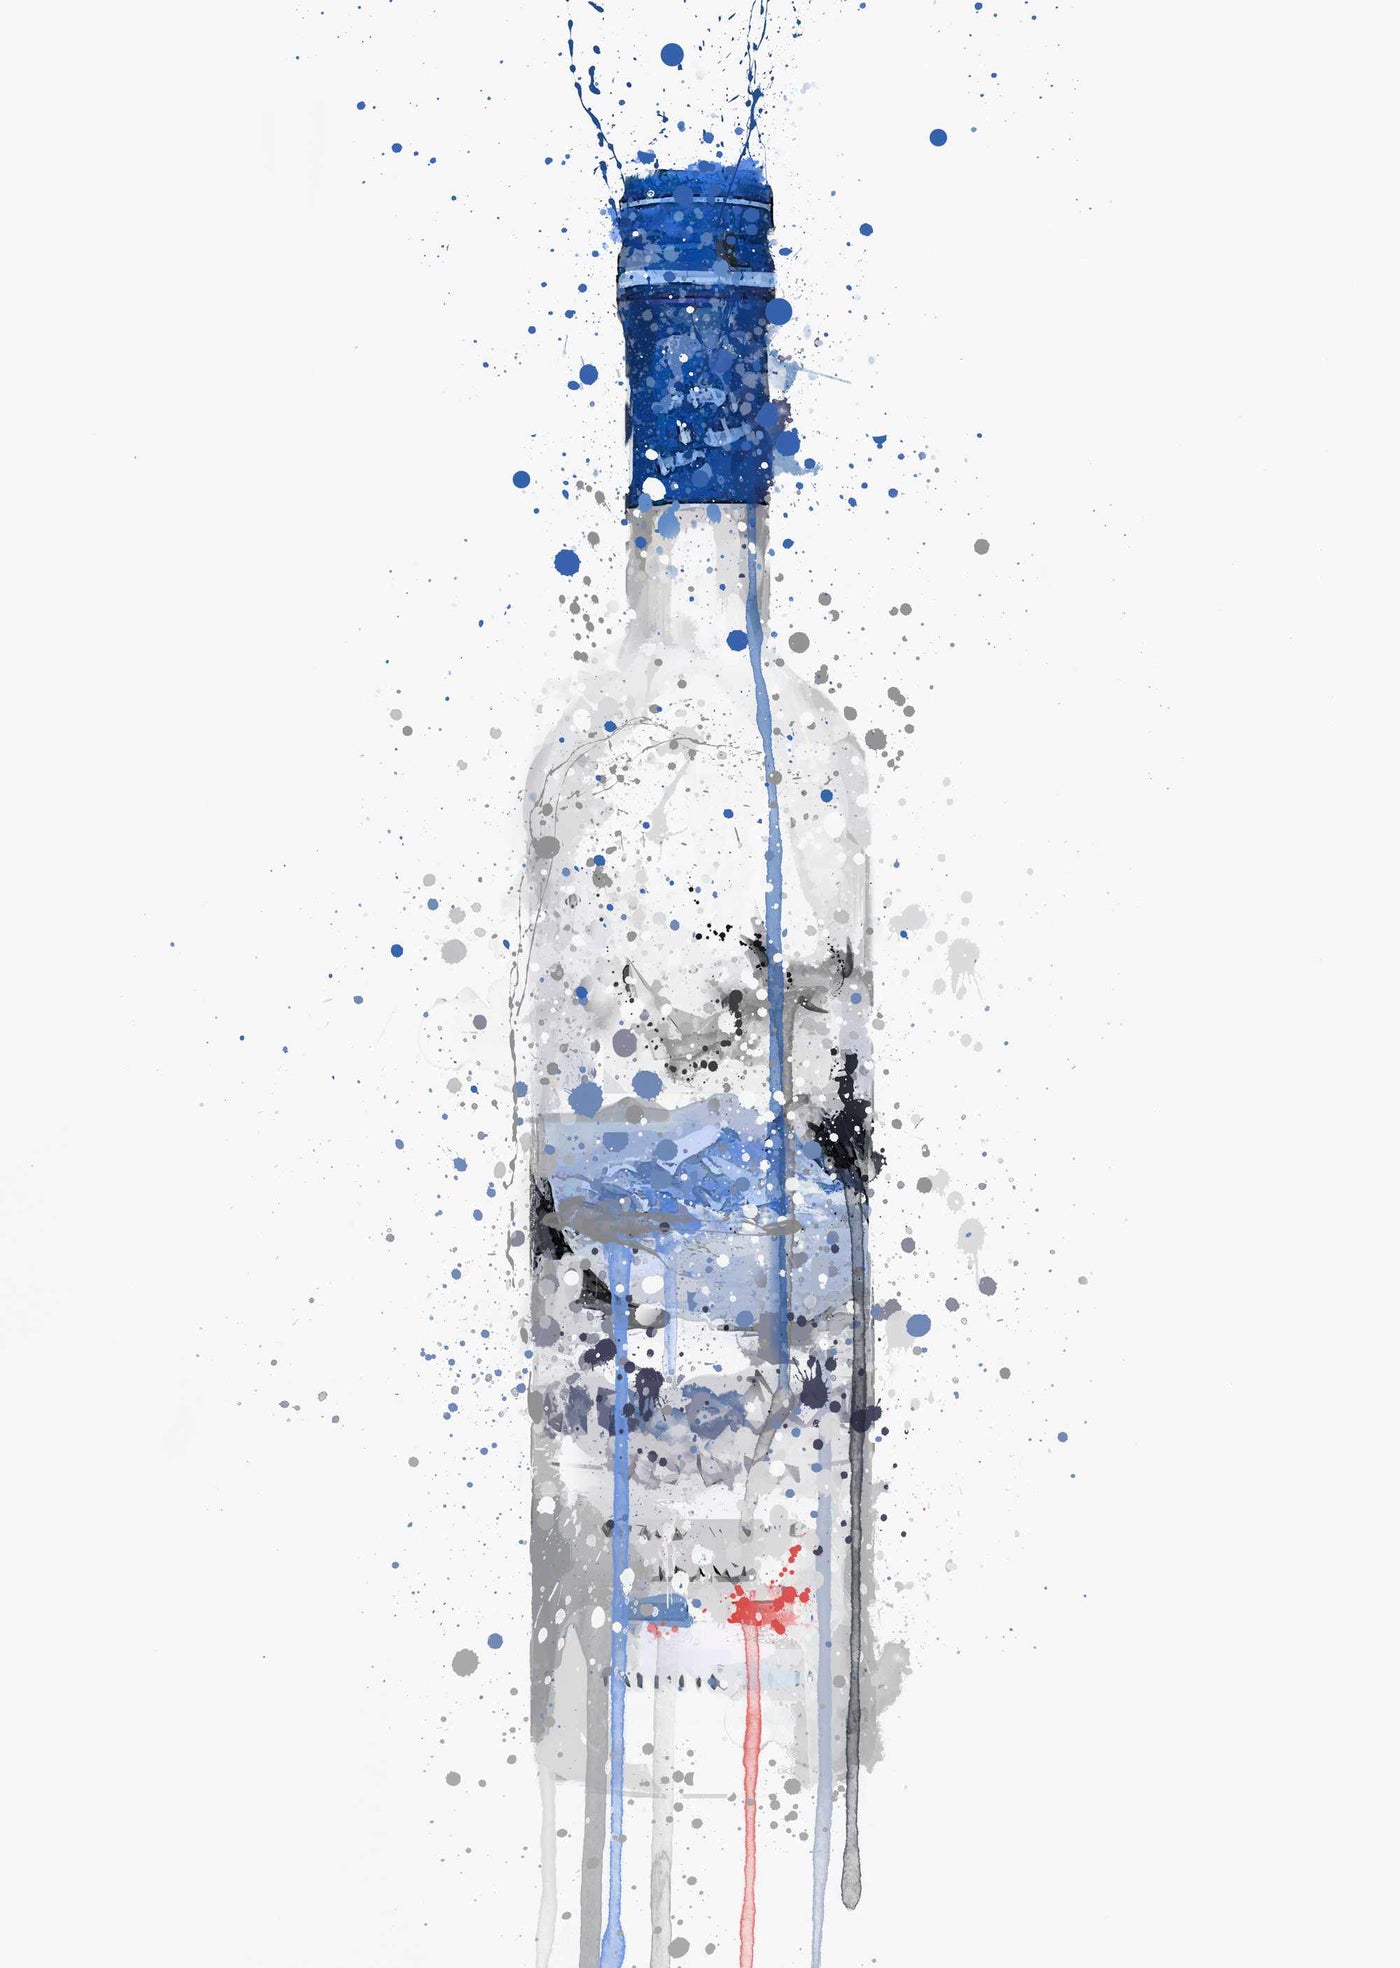 Vodka Bottle Wall Art Print 'Frost'-We Love Prints